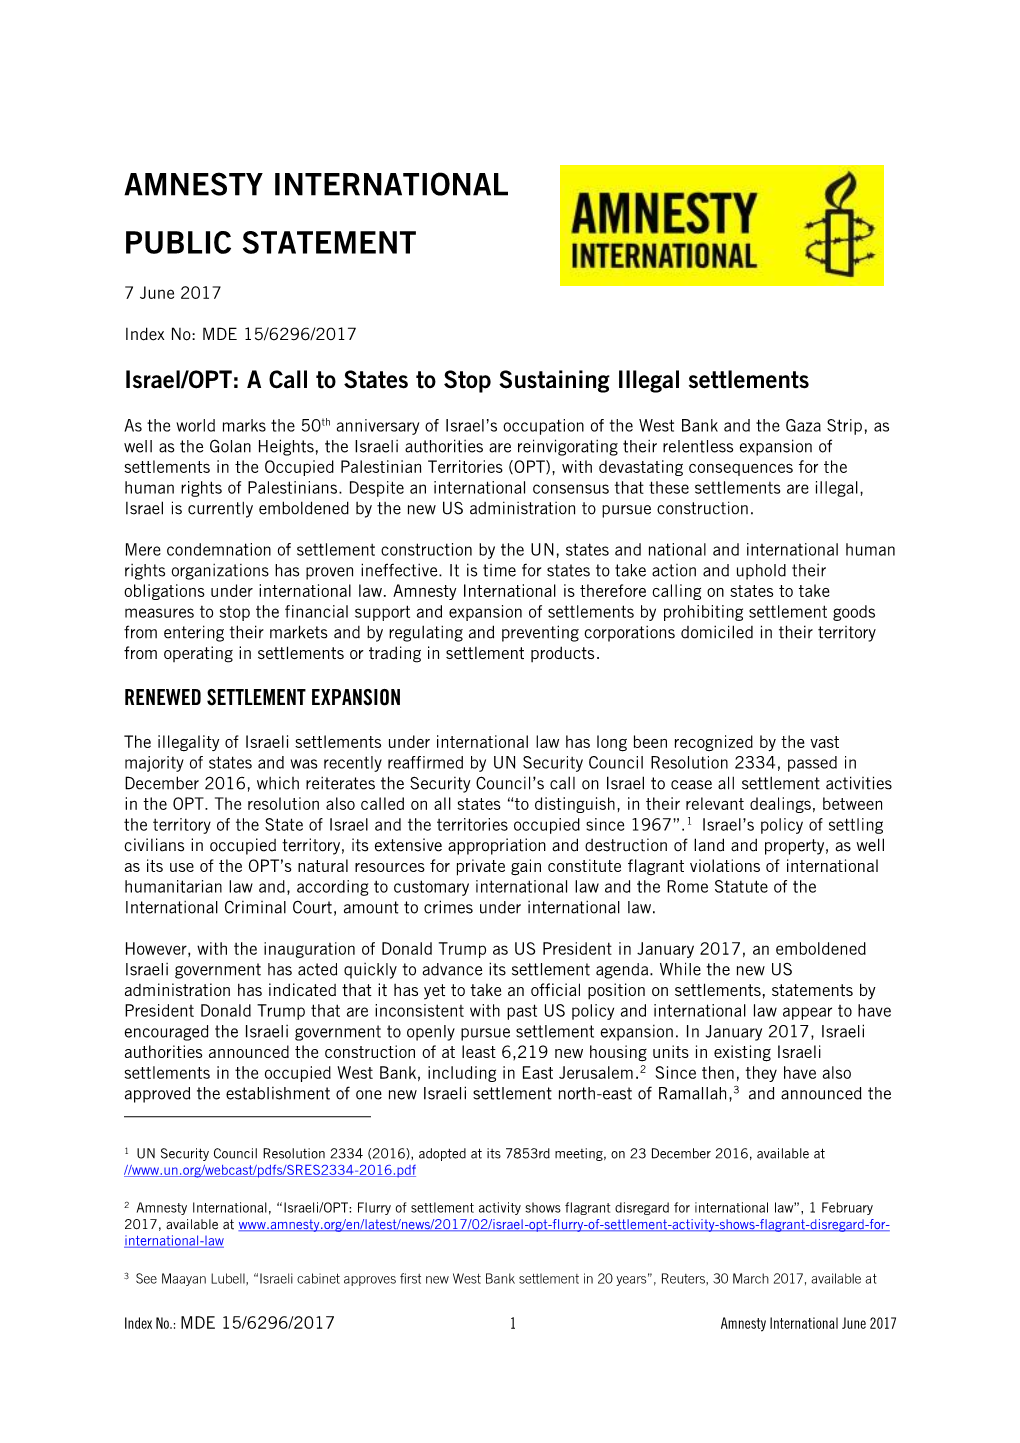 Amnesty International Public Statement